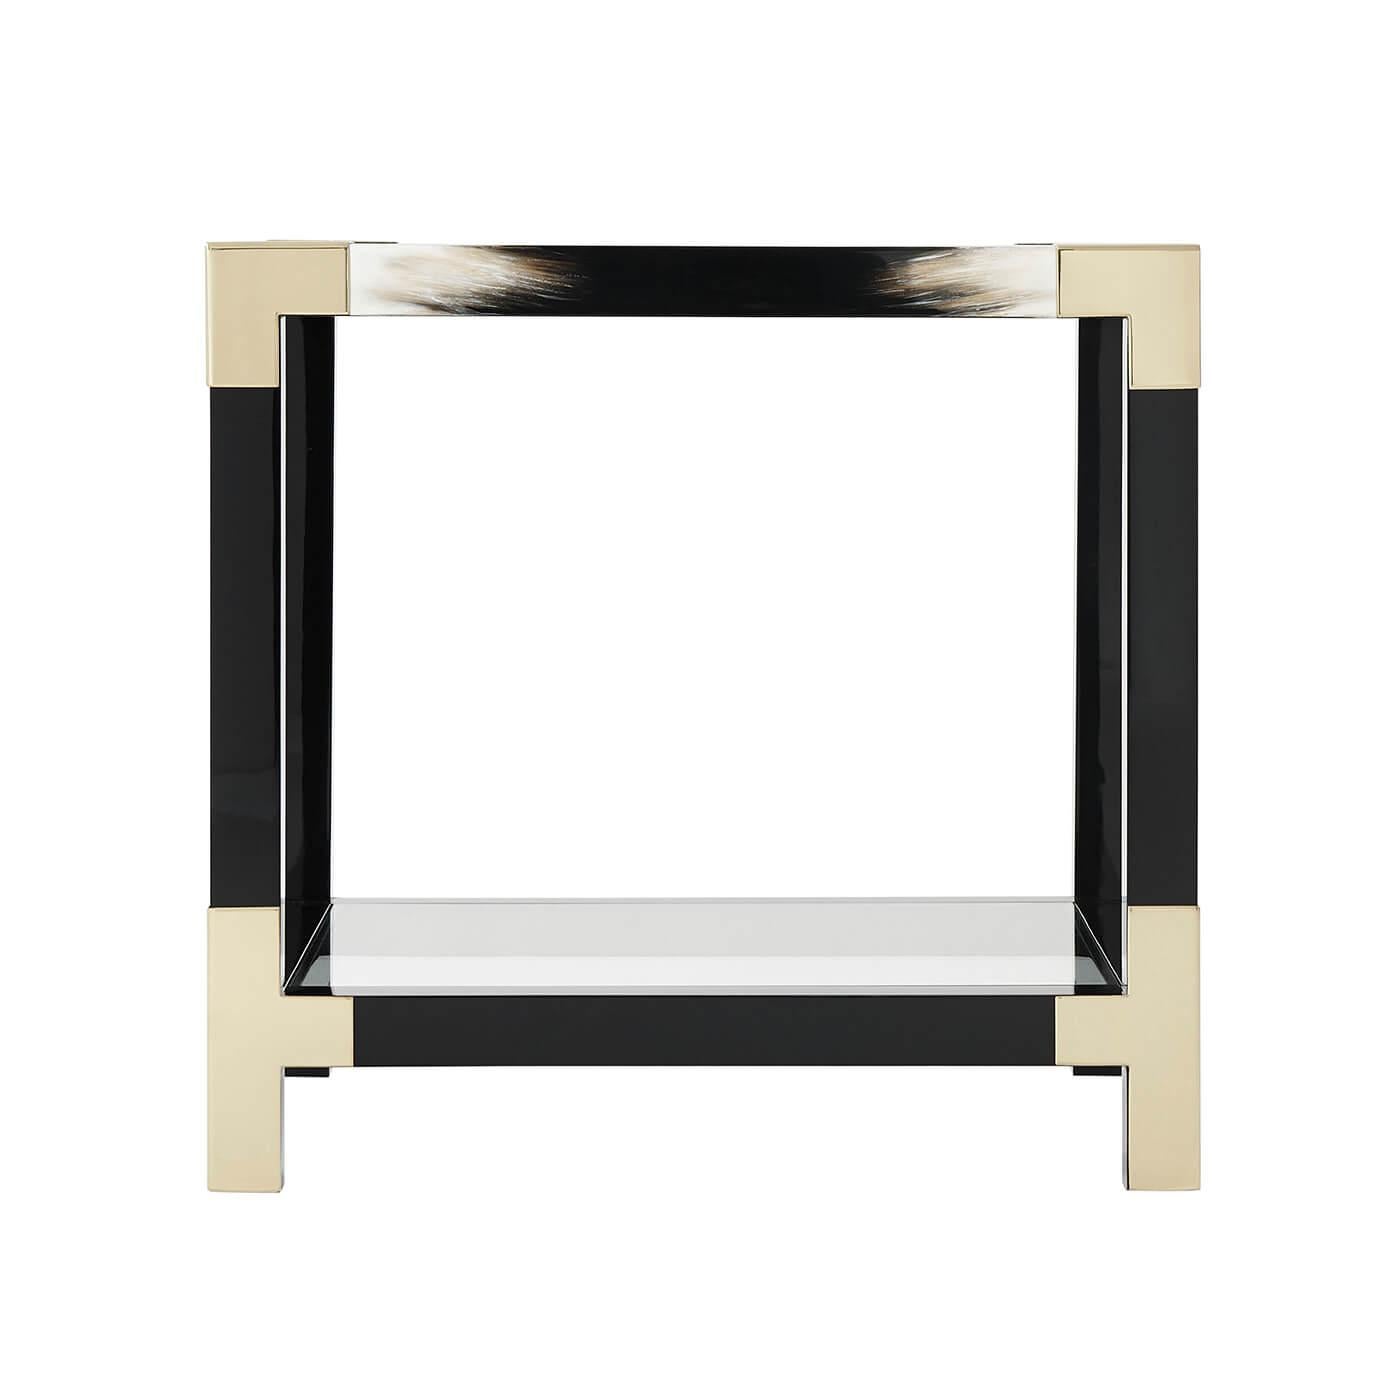 Une table d'appoint laquée noire et peinte en fausse corne, le plateau carré en verre inséré avec des coins en laiton, sur des pieds carrés joints par des traverses et un dessous de verre inséré.

Dimensions : 25